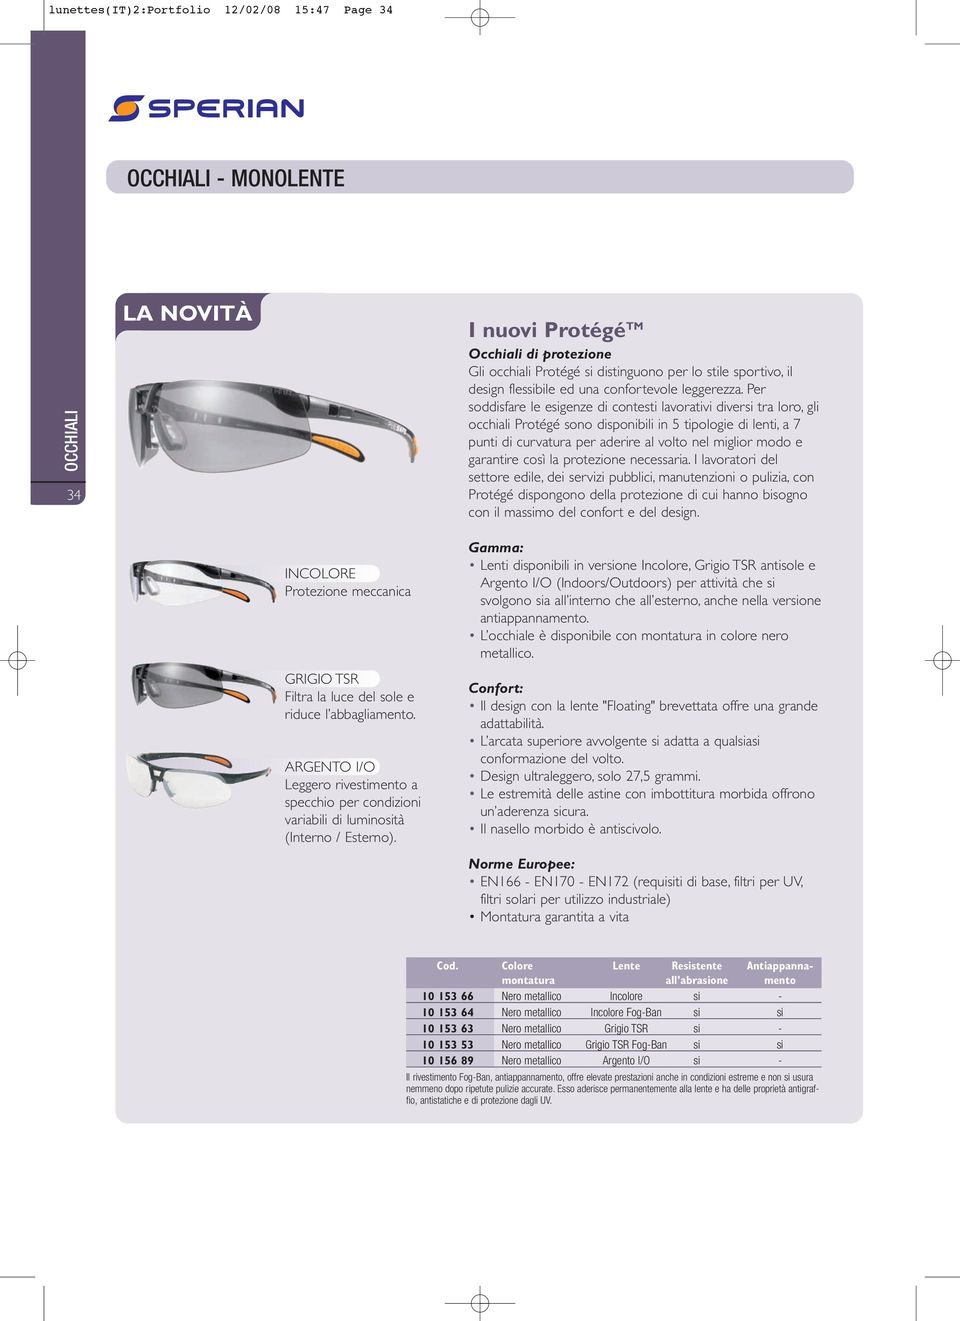 Per soddisfare le esigenze di contesti lavorativi diversi tra loro, gli occhiali Protégé sono disponibili in 5 tipologie di lenti, a 7 punti di curvatura per aderire al volto nel miglior modo e